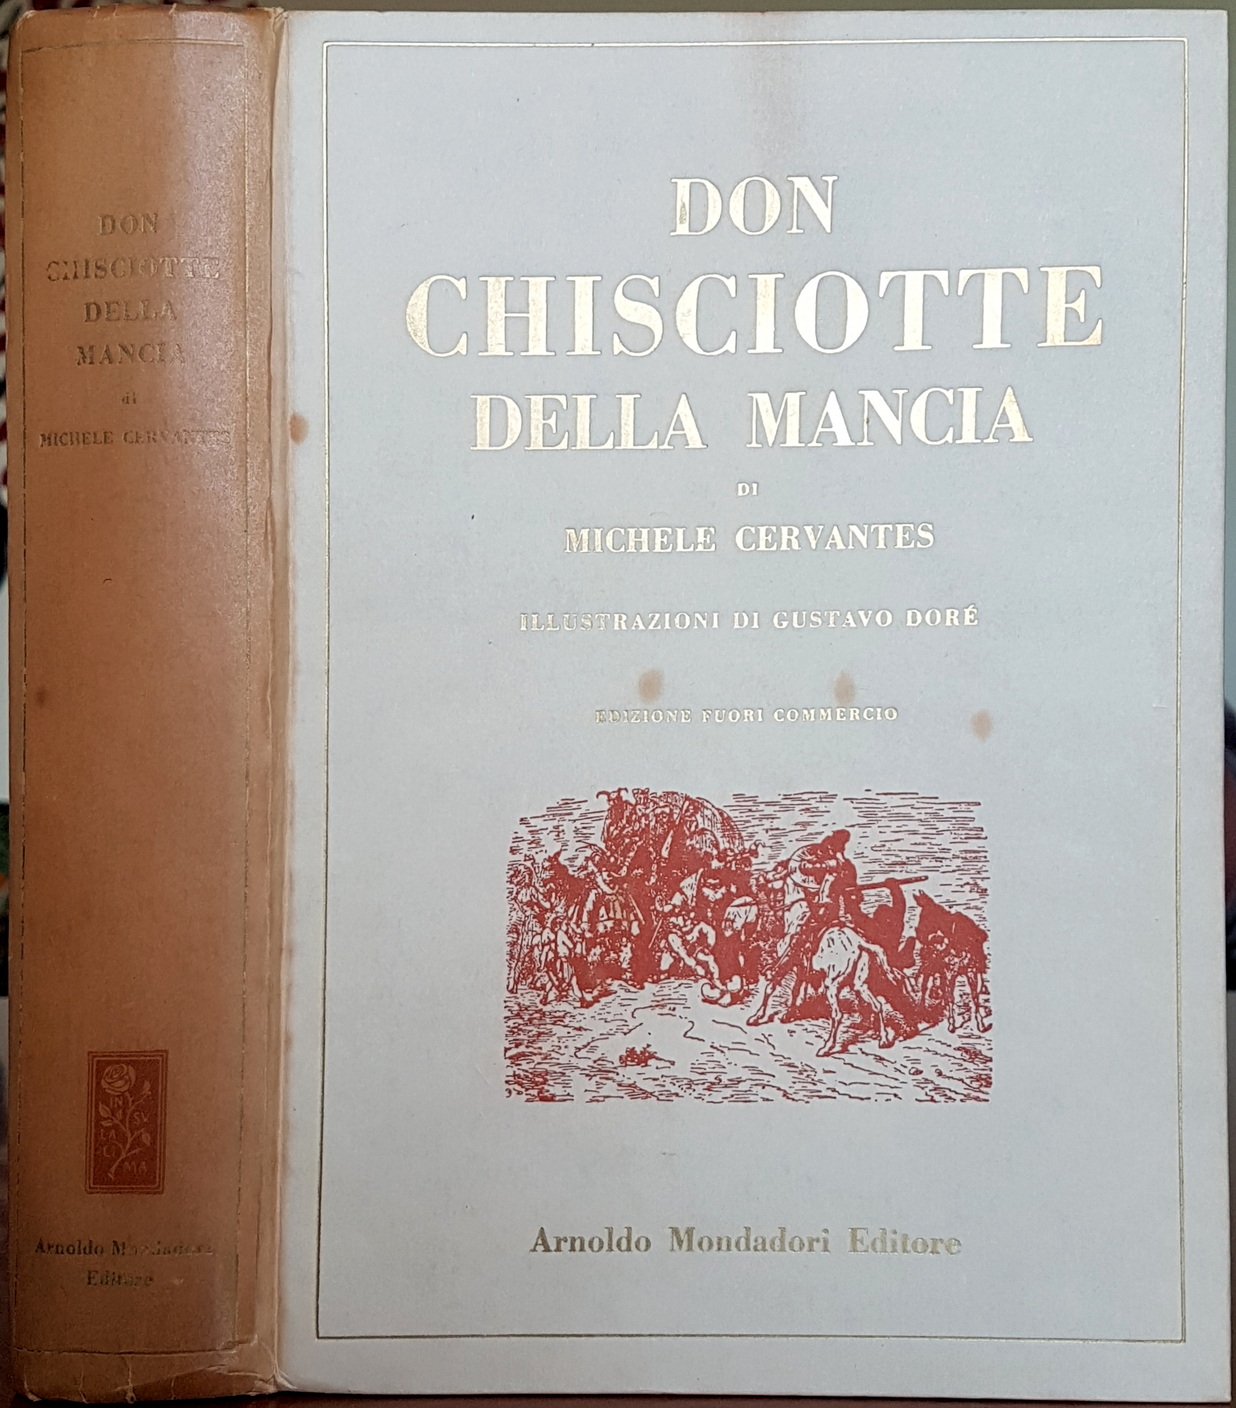 Miguel de Cervantes Saavedra, L’ingegnoso gentiluomo Don Chisciotte della Mancia, Ed. Mondadori, 1952